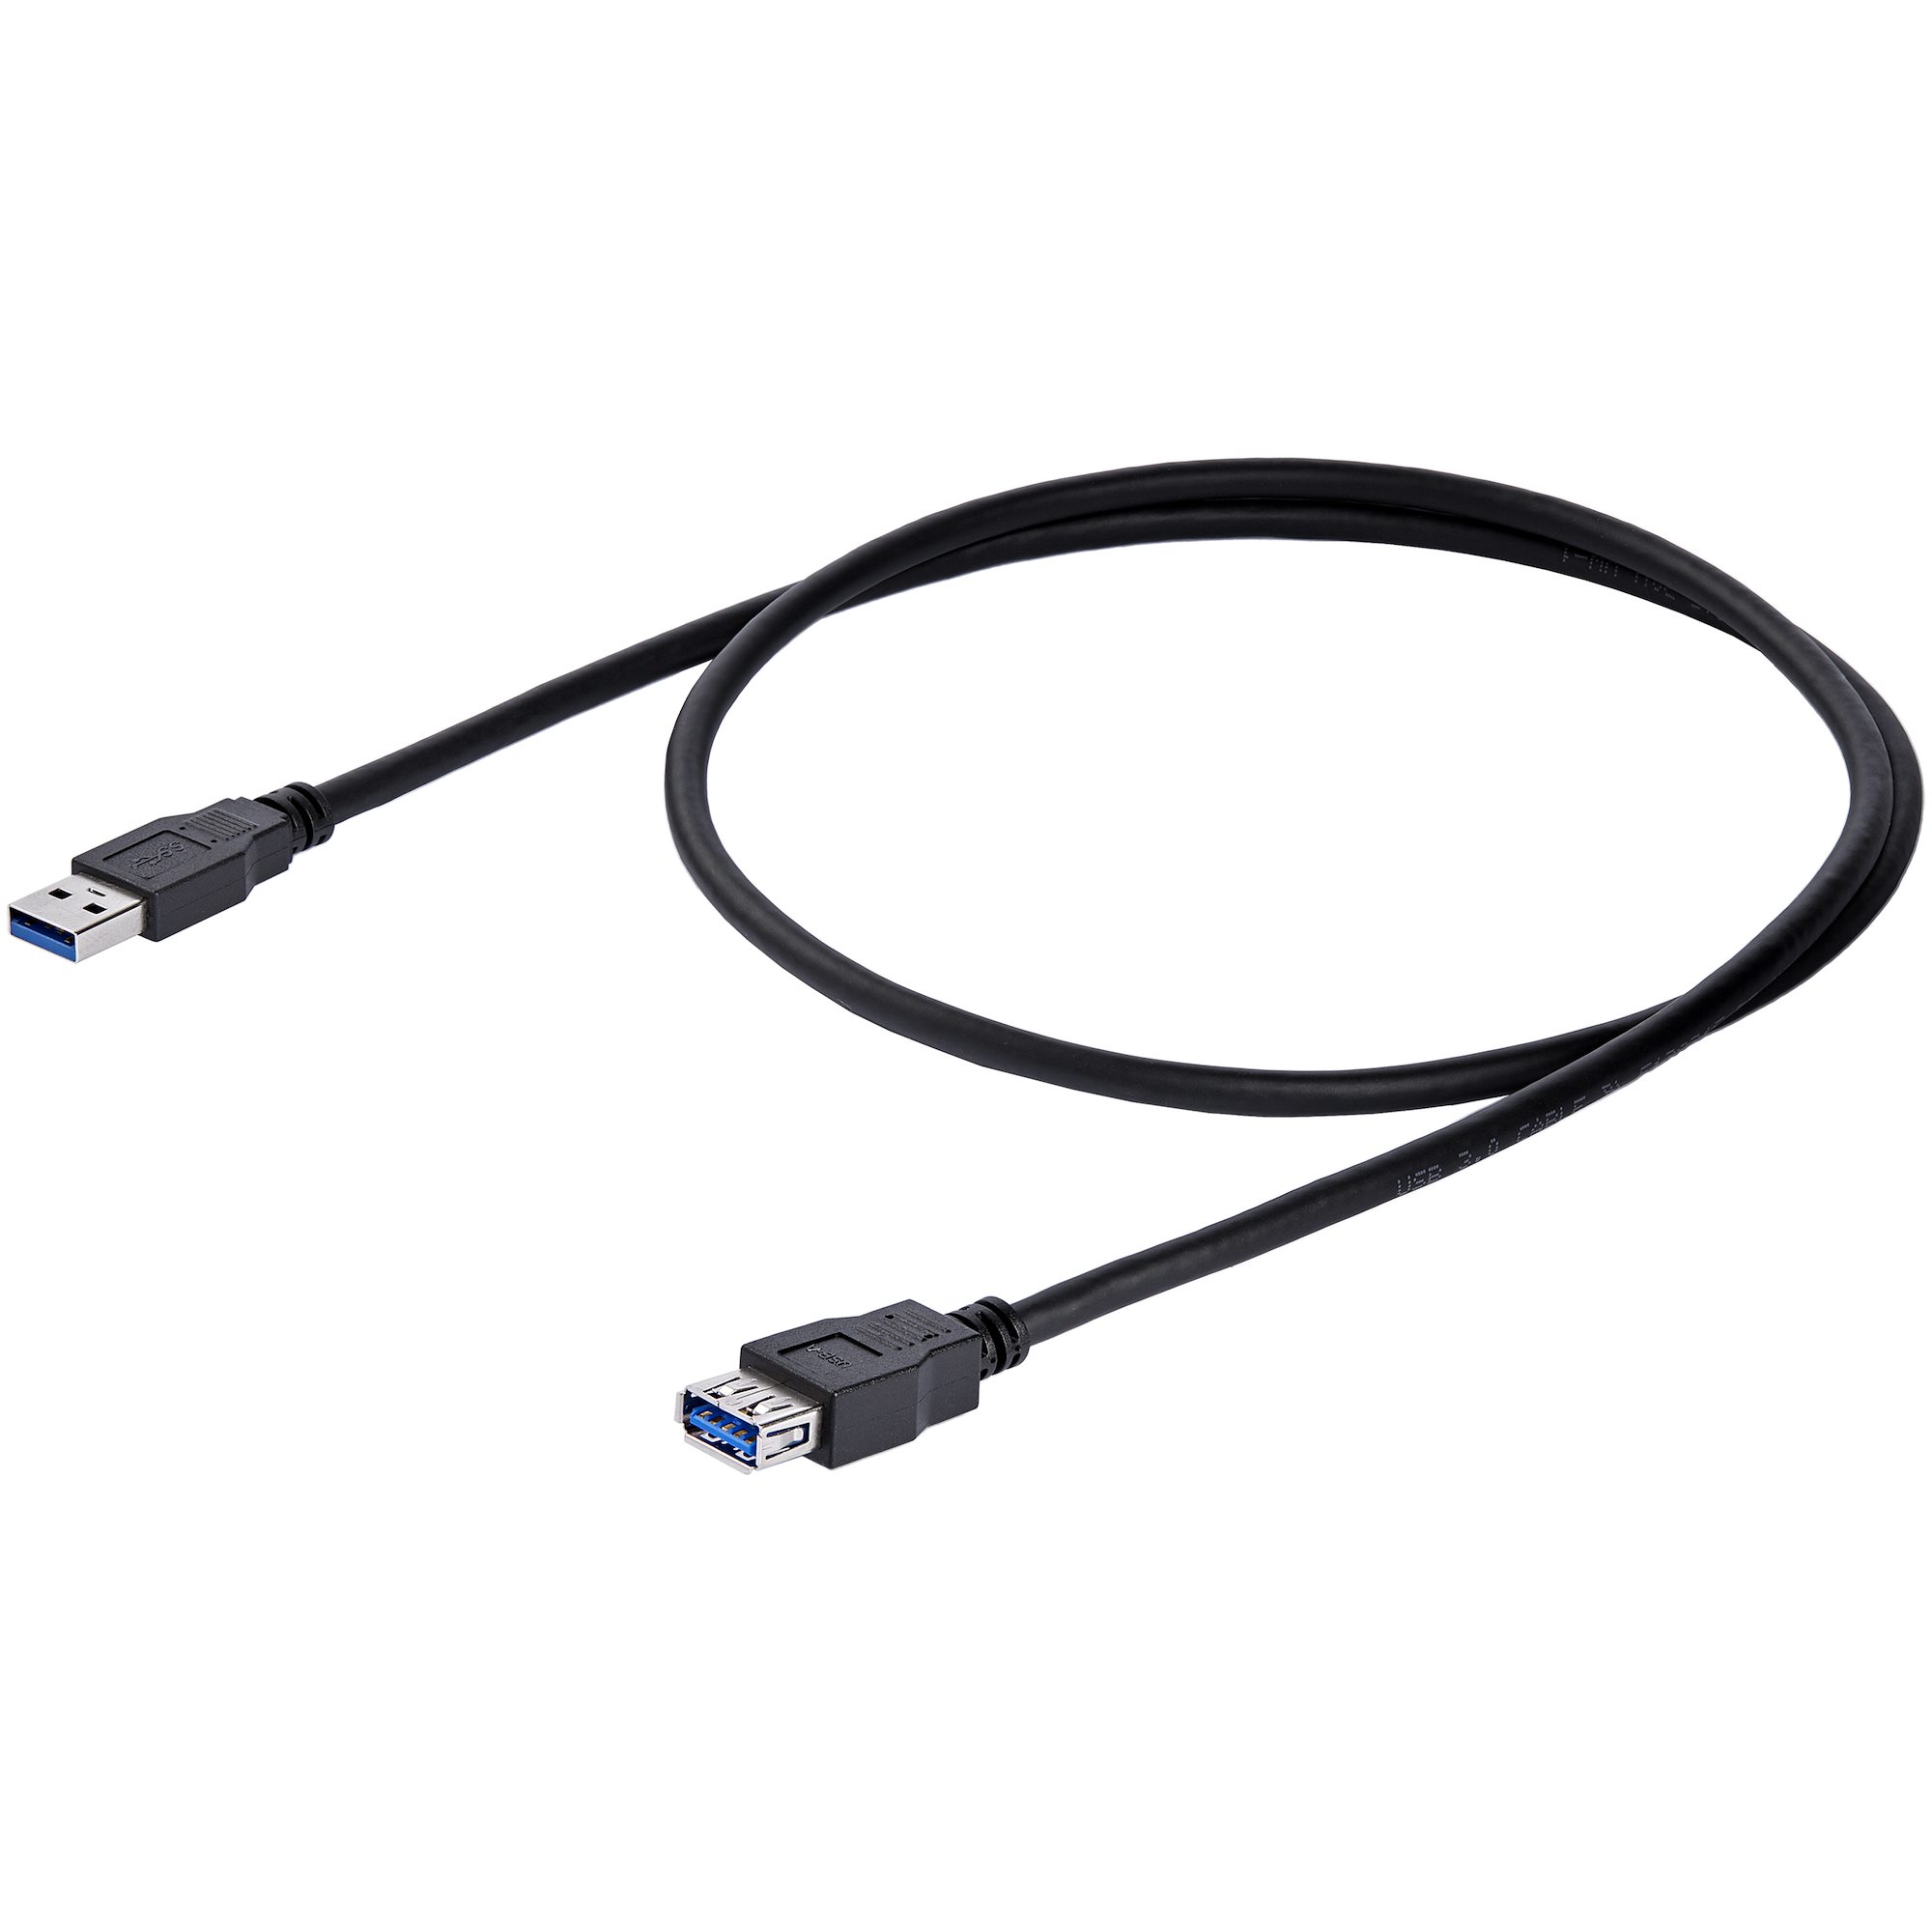 Basics Cable alargador USB 3.0 A macho a USB 2.0 A hembra (1 m),  Negro